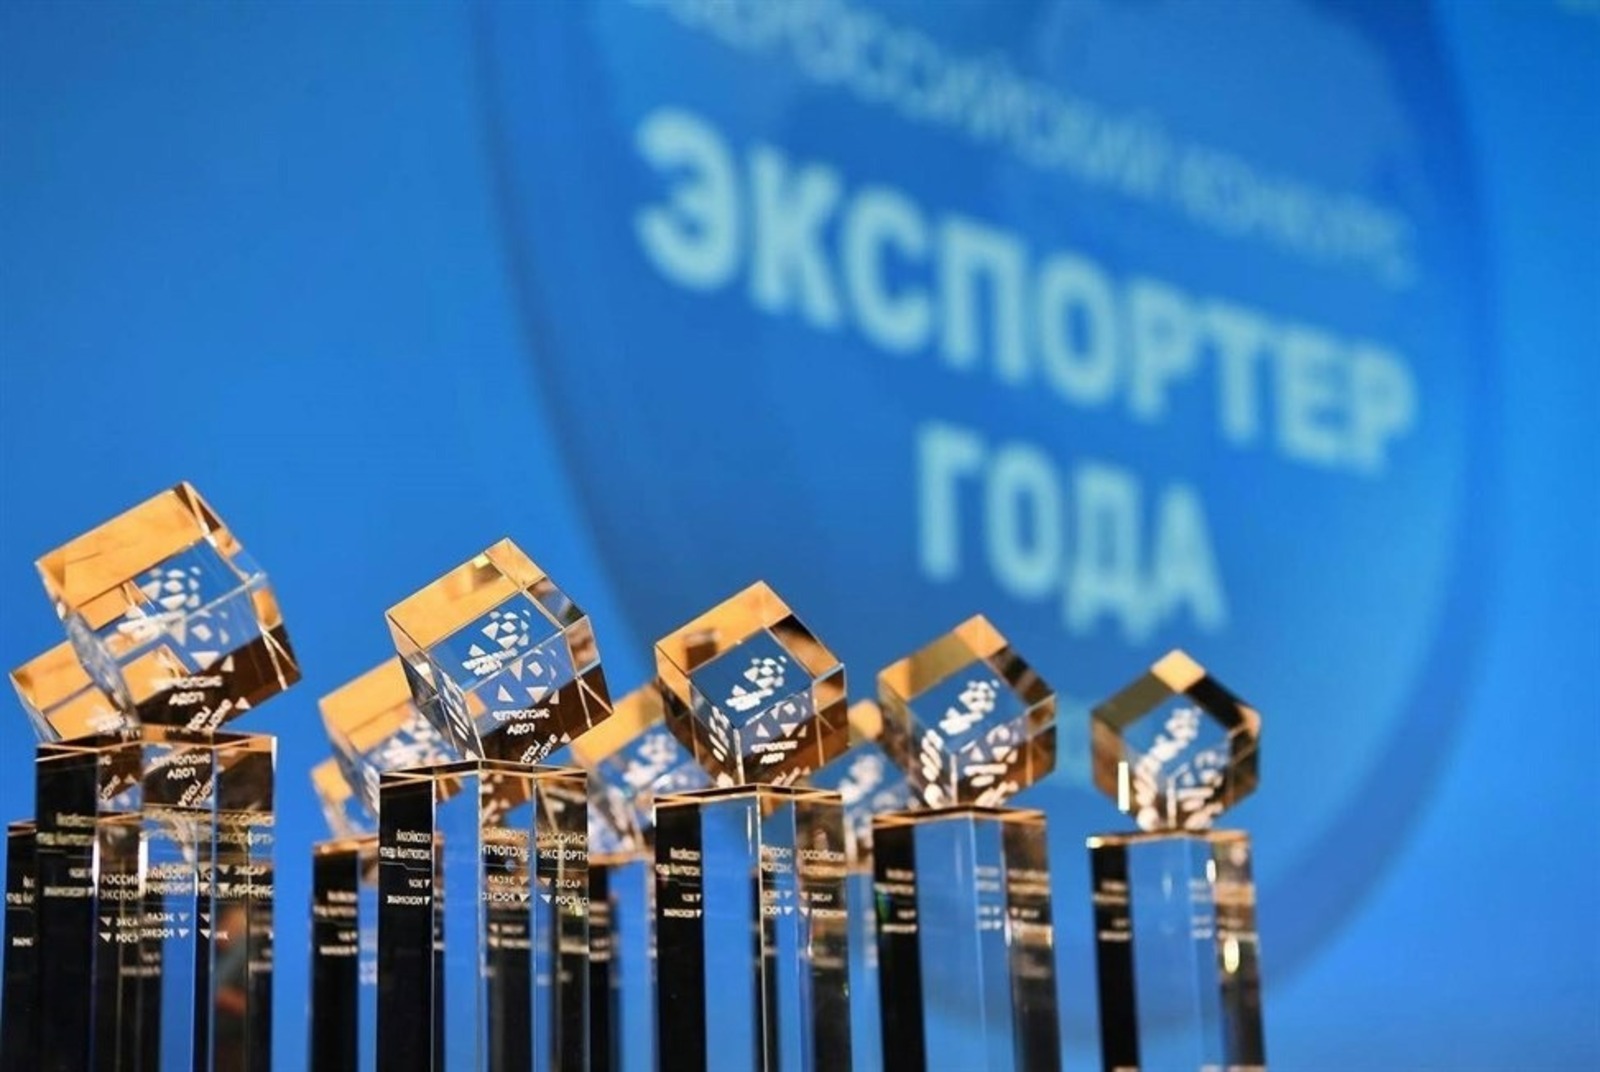 В Башкирии было отмечено девять малых и средних предприятий, которые получили звание "Экспортер года".